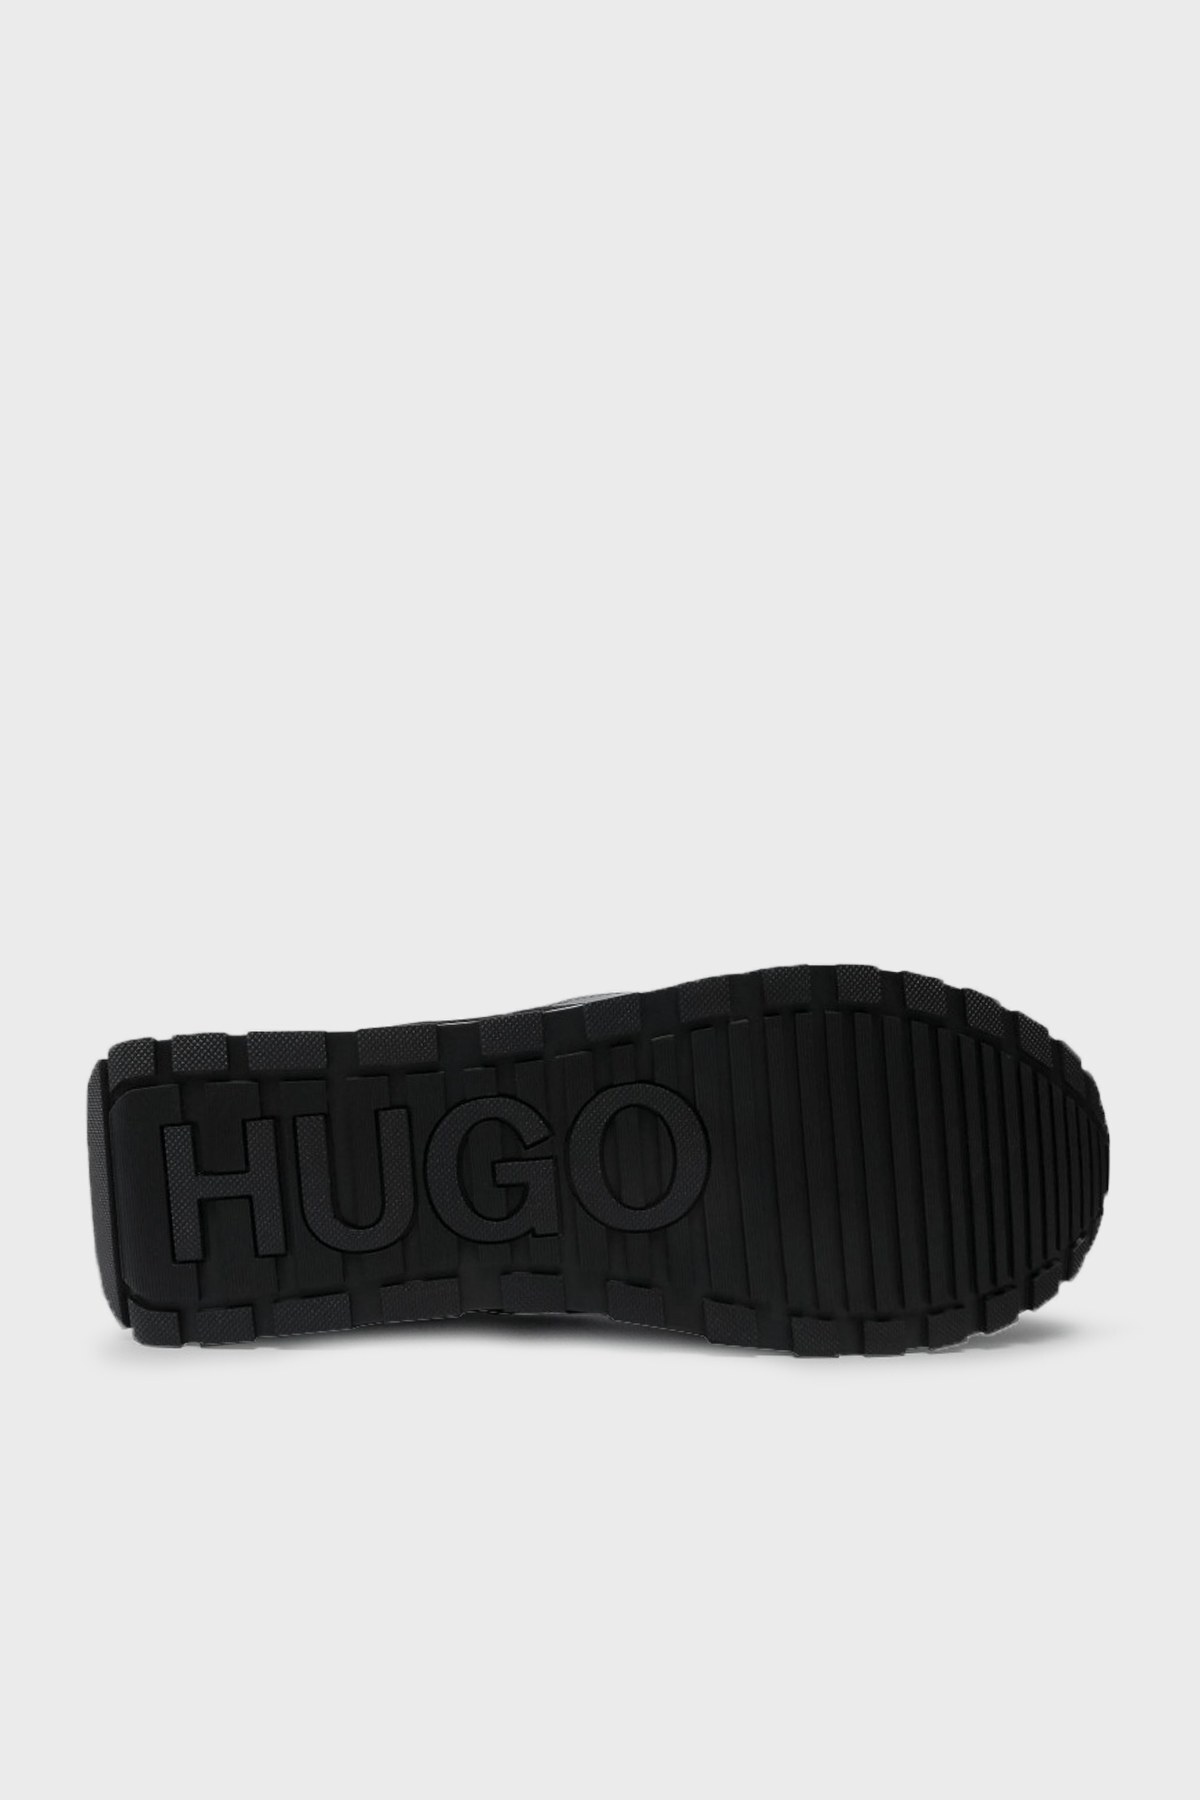 Hugo Boss Erkek Ayakkabı 50451740 340 HAKİ-SİYAH